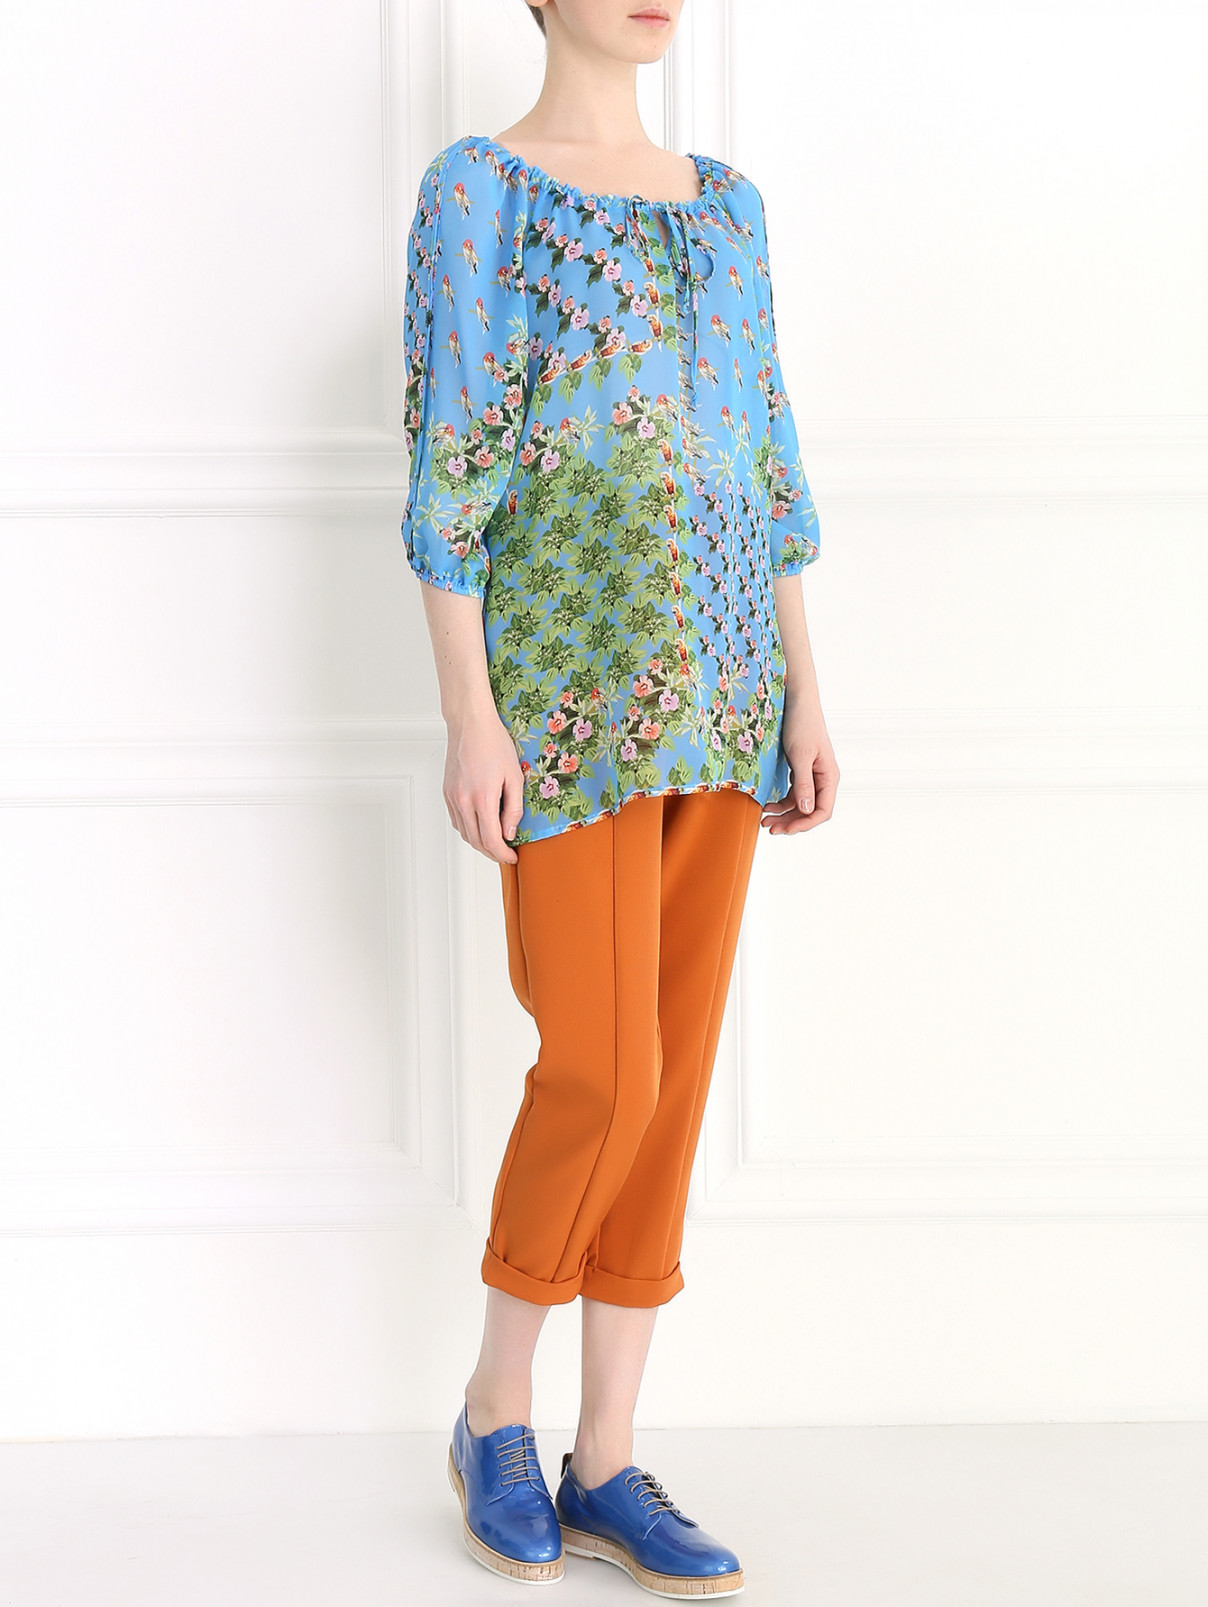 Блуза из вискозы с цветочным узором Femme by Michele R.  –  Модель Общий вид  – Цвет:  Узор